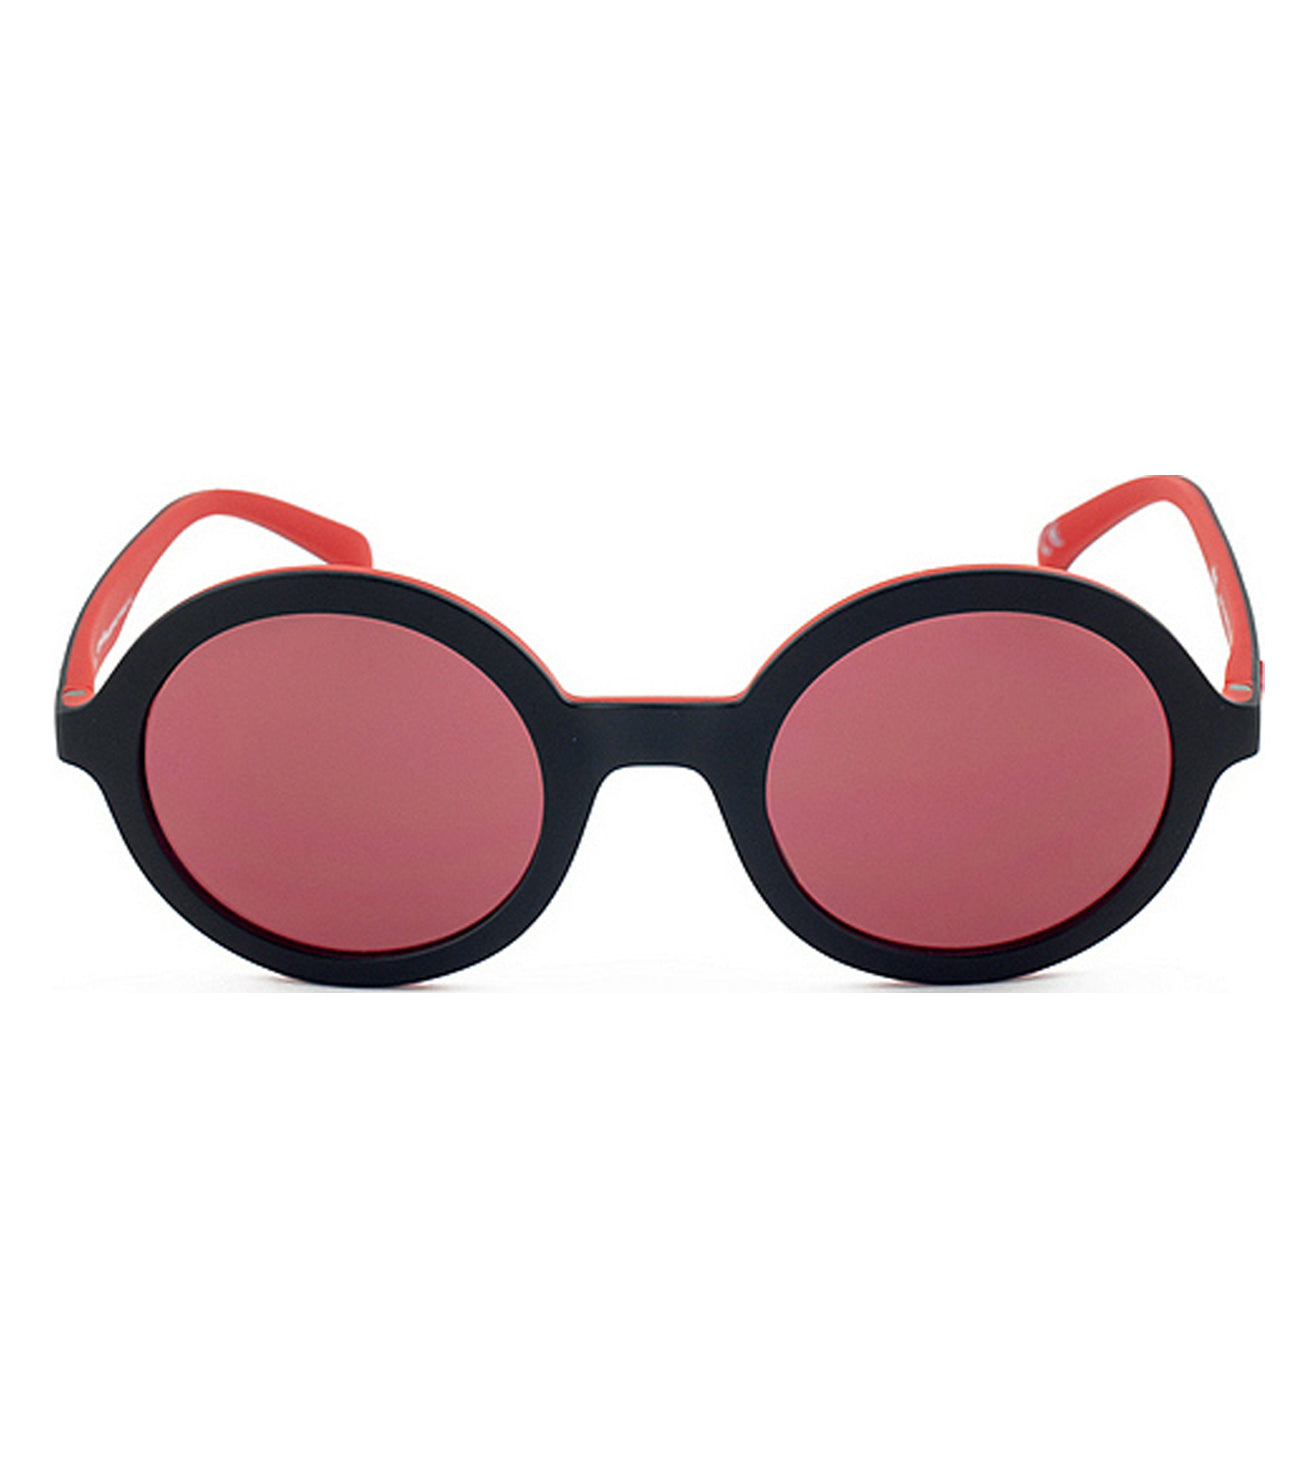 Pink Round Women Sunglasses